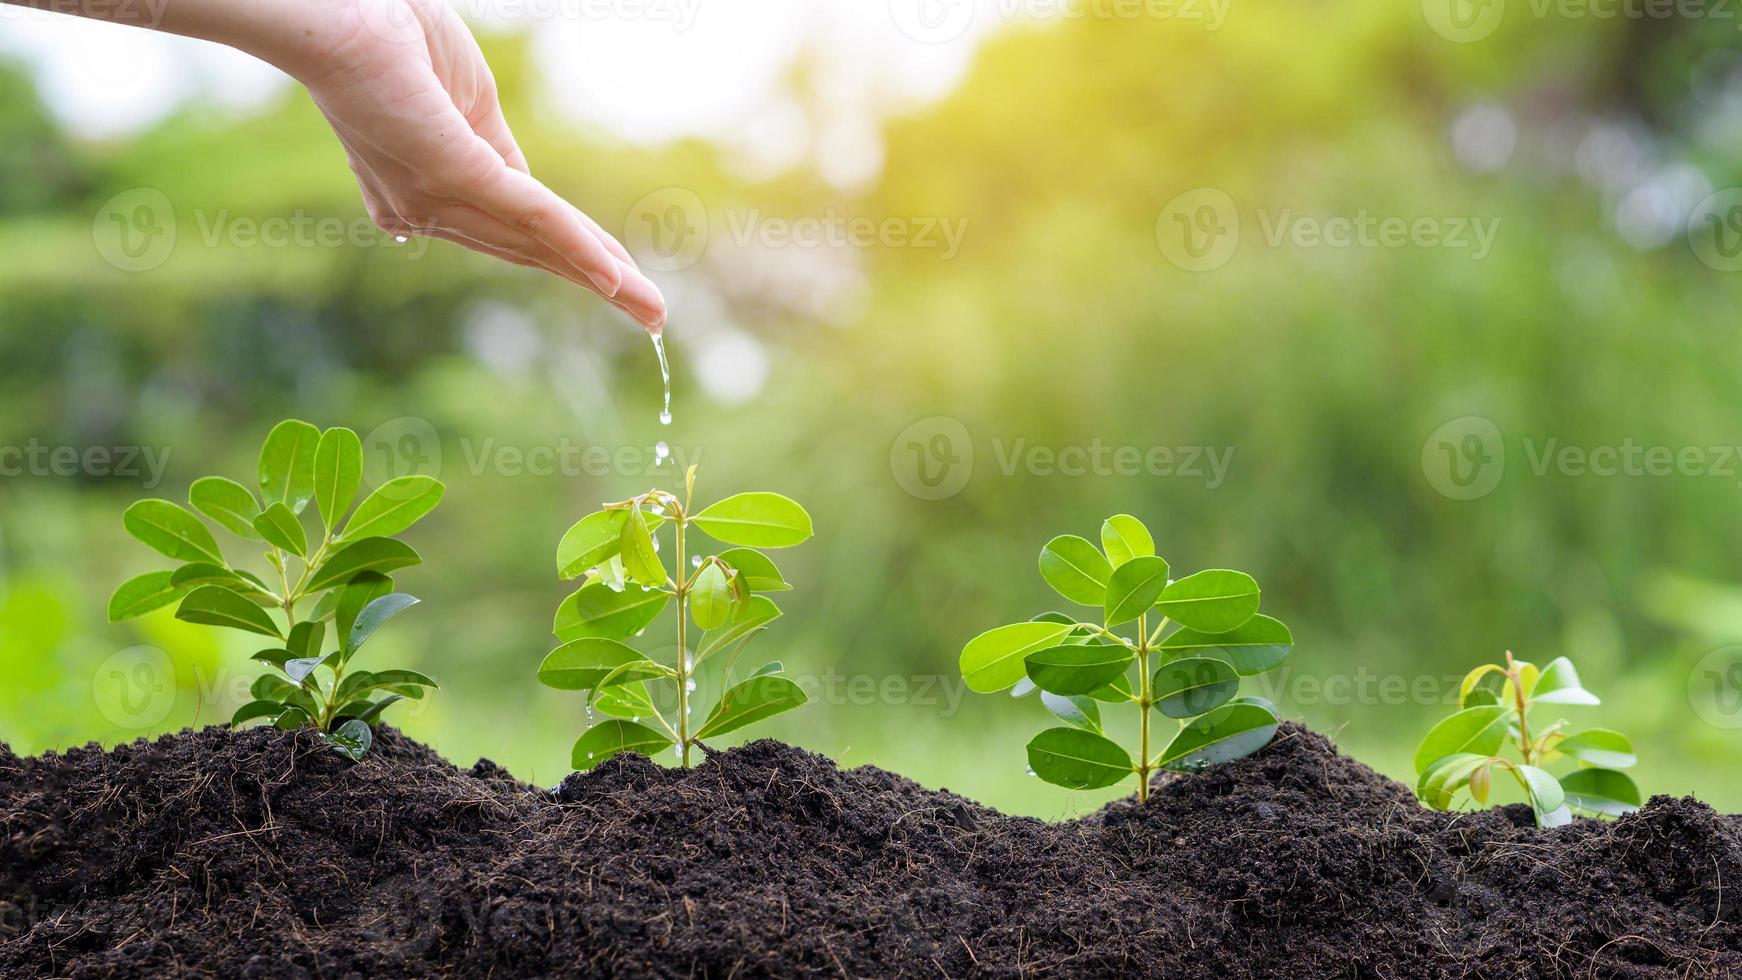 cerrar la mano con agua goteando en la planta en suelos fértiles, concepto de conservación ecológica foto